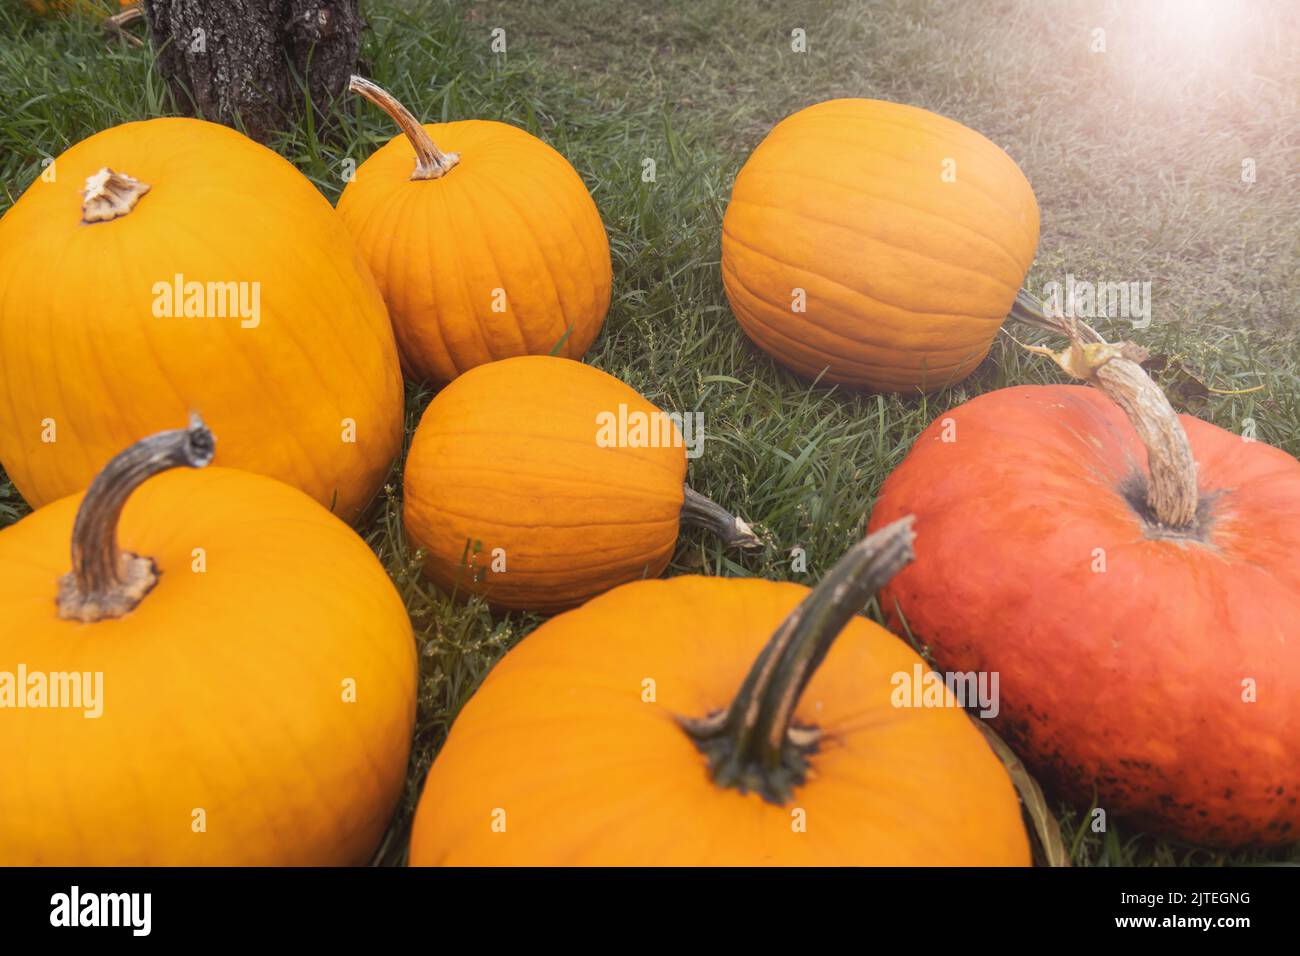 pumpkins lie on green grass Stock Photo